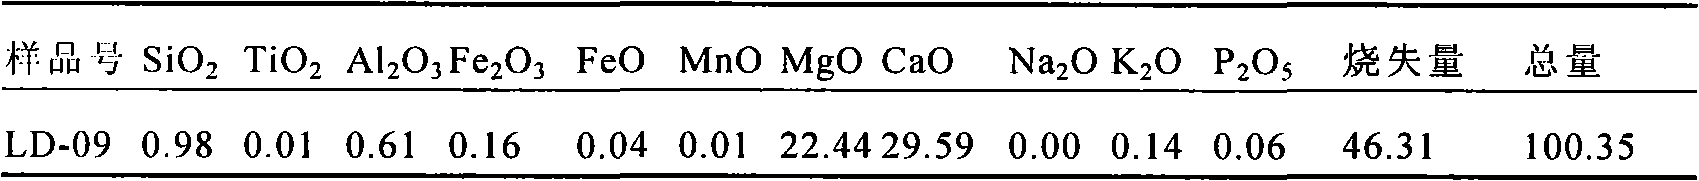 Process for preparing light magnesium oxide and calcium carbonate powder by utilizing dolomite acid method